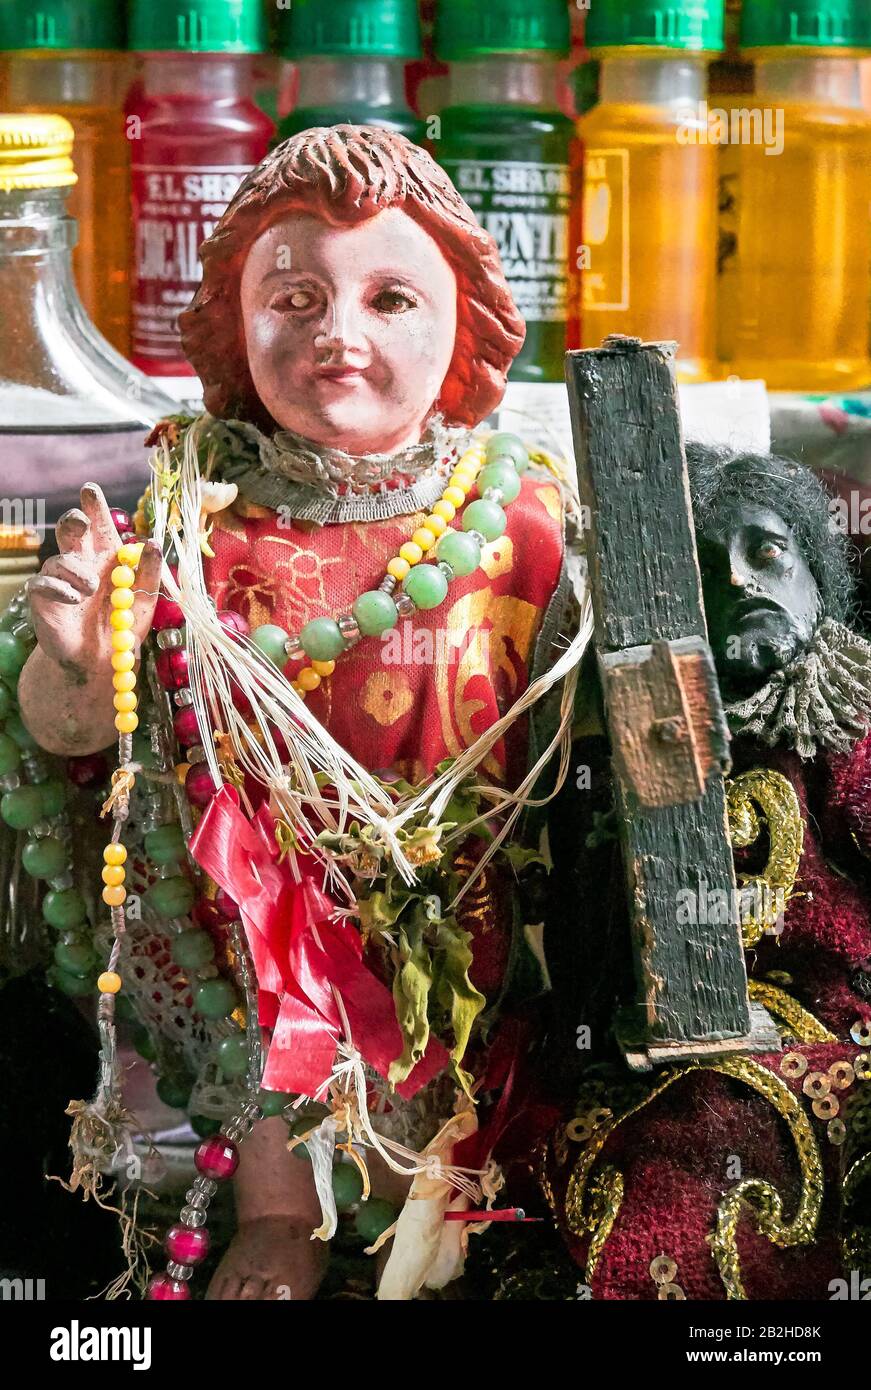 Manille, Philippines: Santo Nino, enfant Jésus figure, une figure noire de nazaréen, l'eau Sainte en bouteilles à vendre autour de l'église de Quiapo Banque D'Images